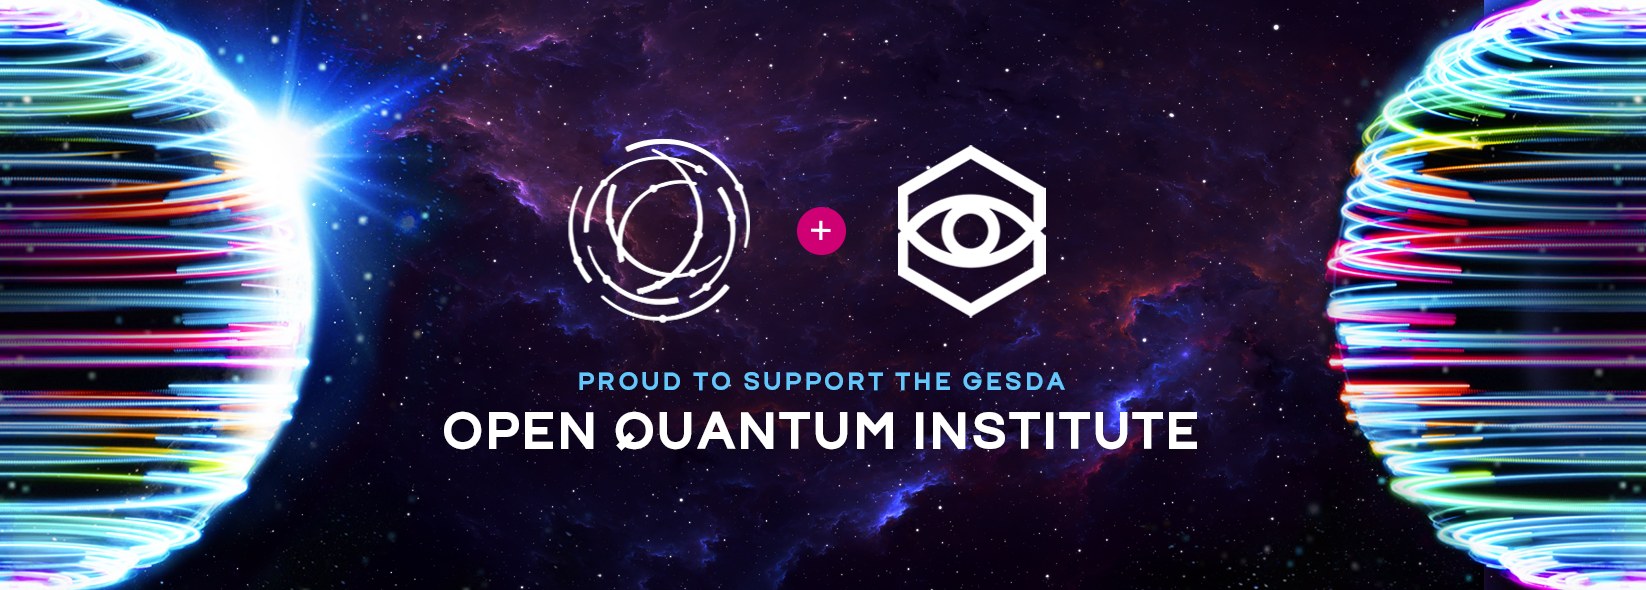 Introducing the Open Quantum Institute from gesda